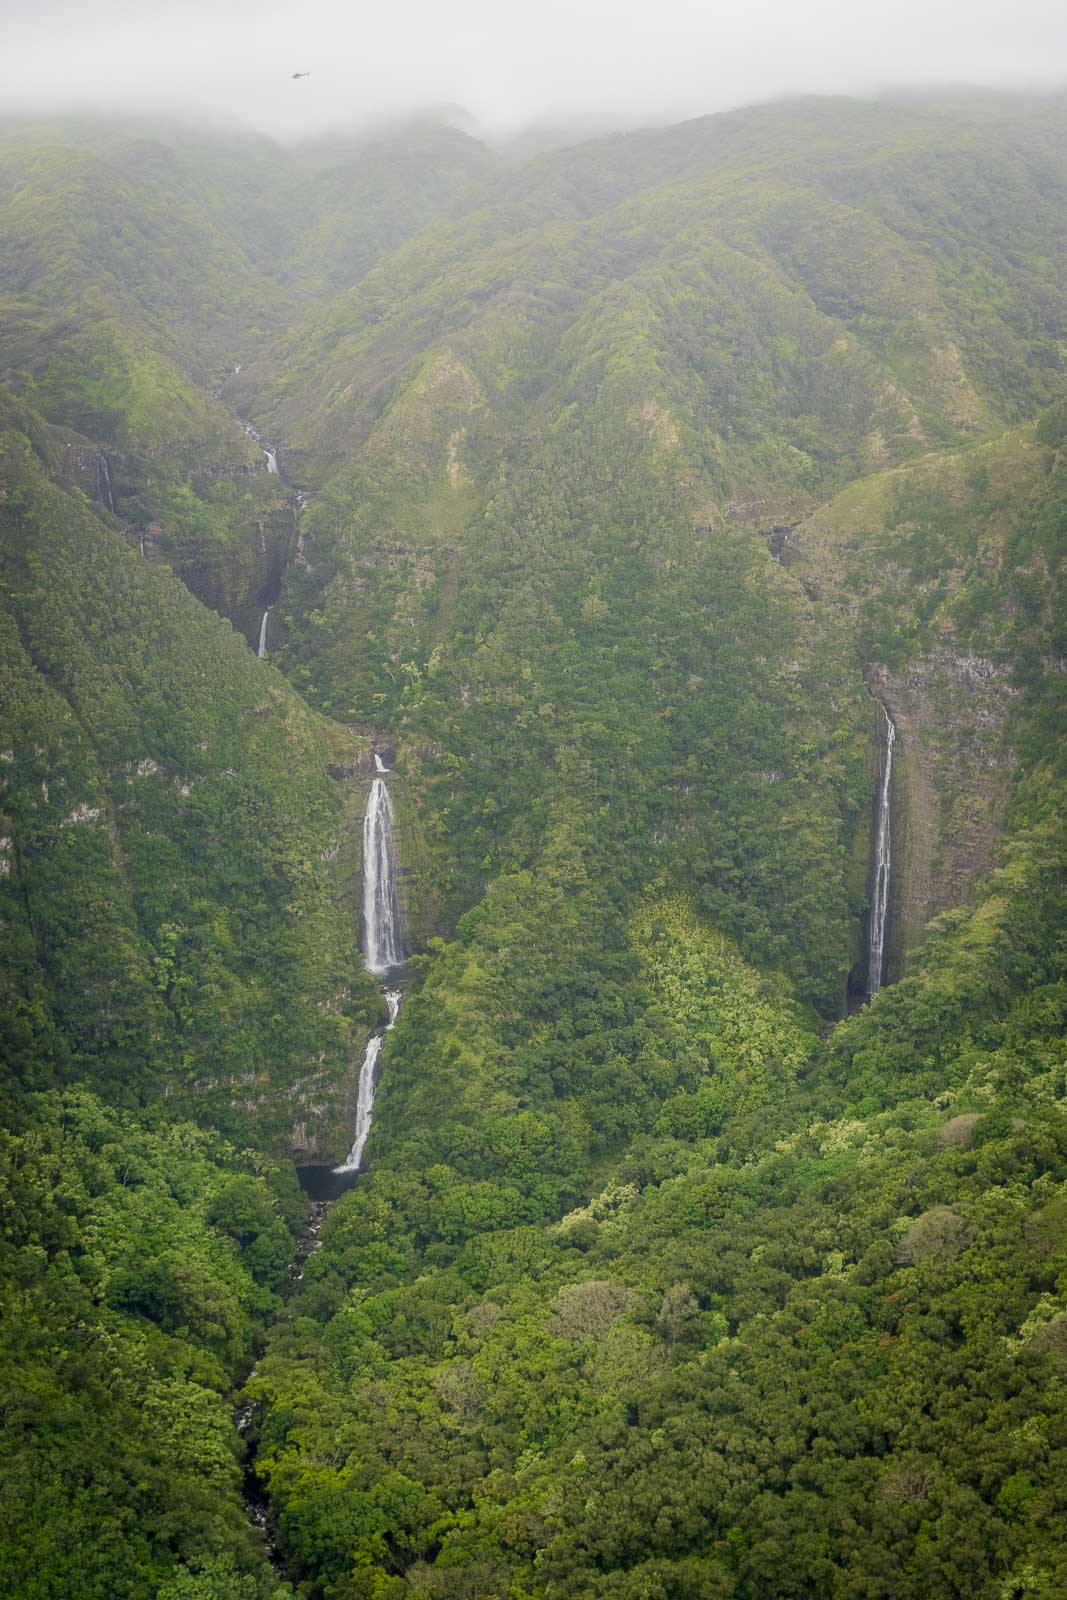 Witness the beauty of Mount Waialeale in Kauai